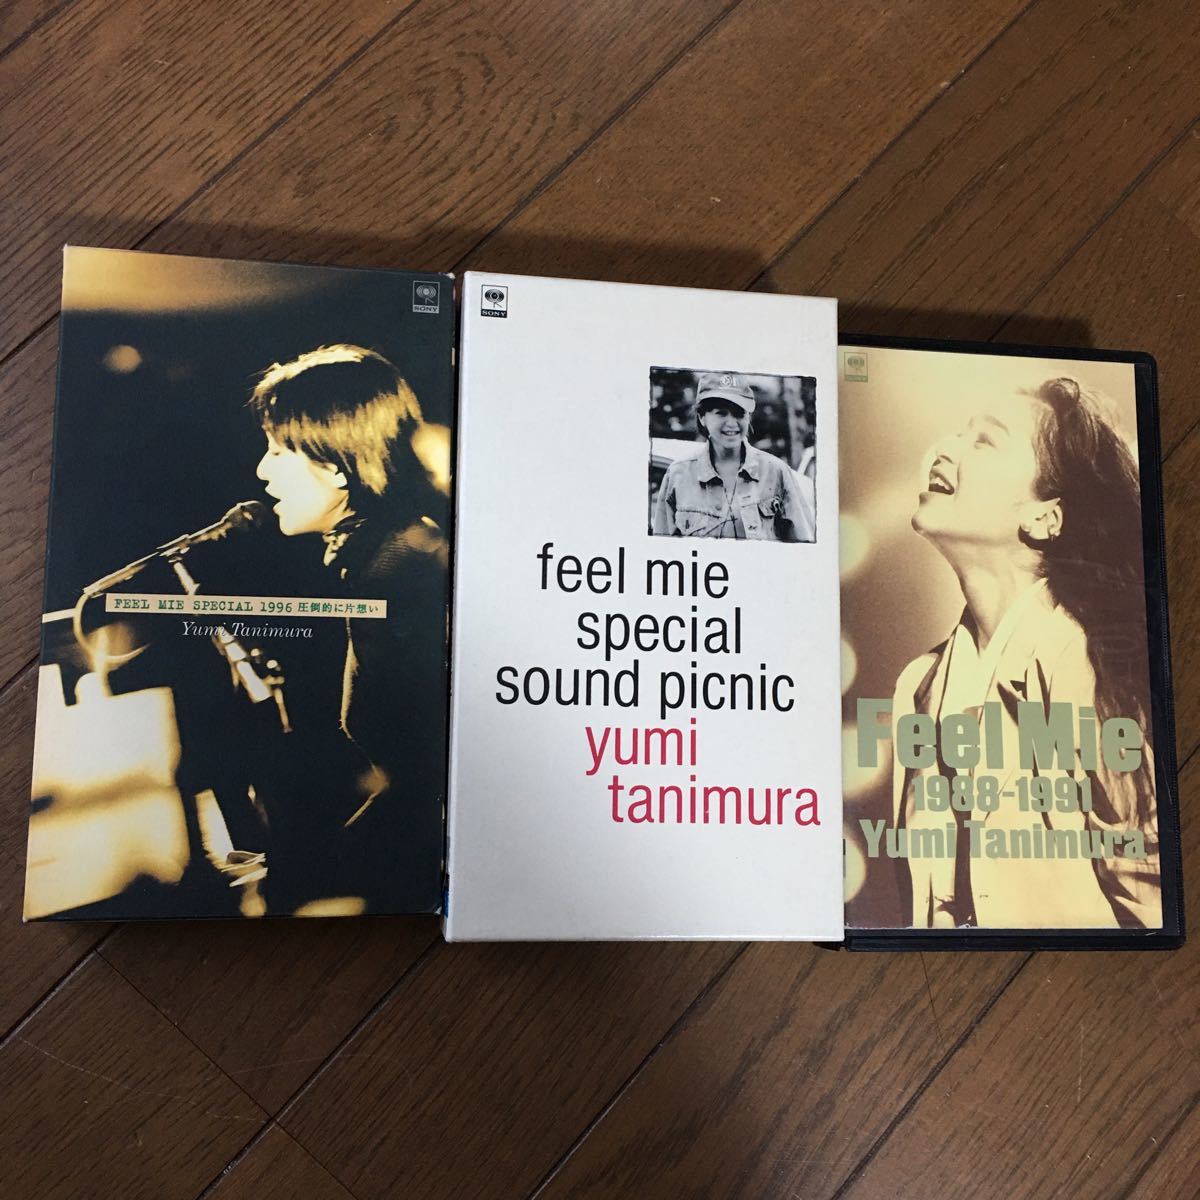 Набор видео Yumi Tanimura 3 FEEL MIE 1988-1991, FEEL MIE SPECIAL SOUND PICNIC, FEEL MIE SPECIAL 1996 В подавляющем большинстве случаев безответная любовь